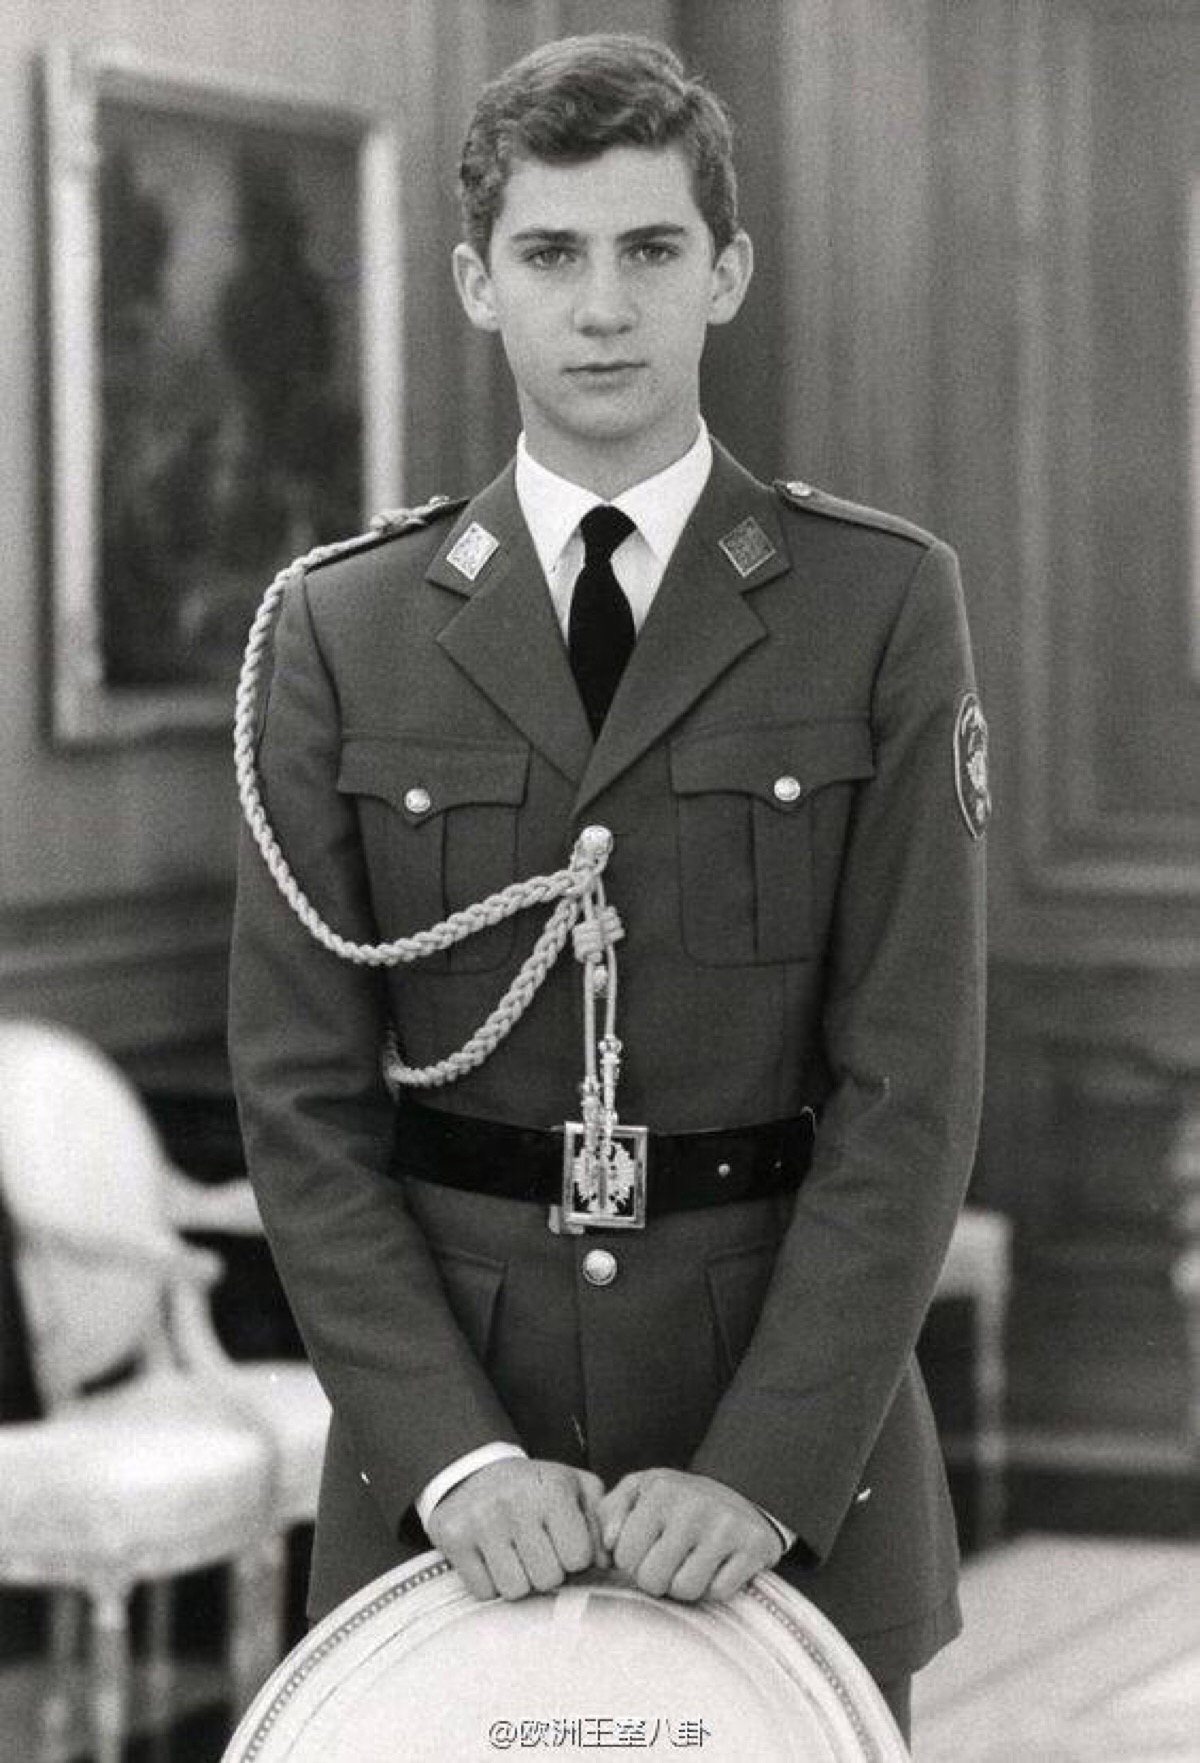 1985年时的西班牙国王菲利普六世,才17岁的小鲜肉